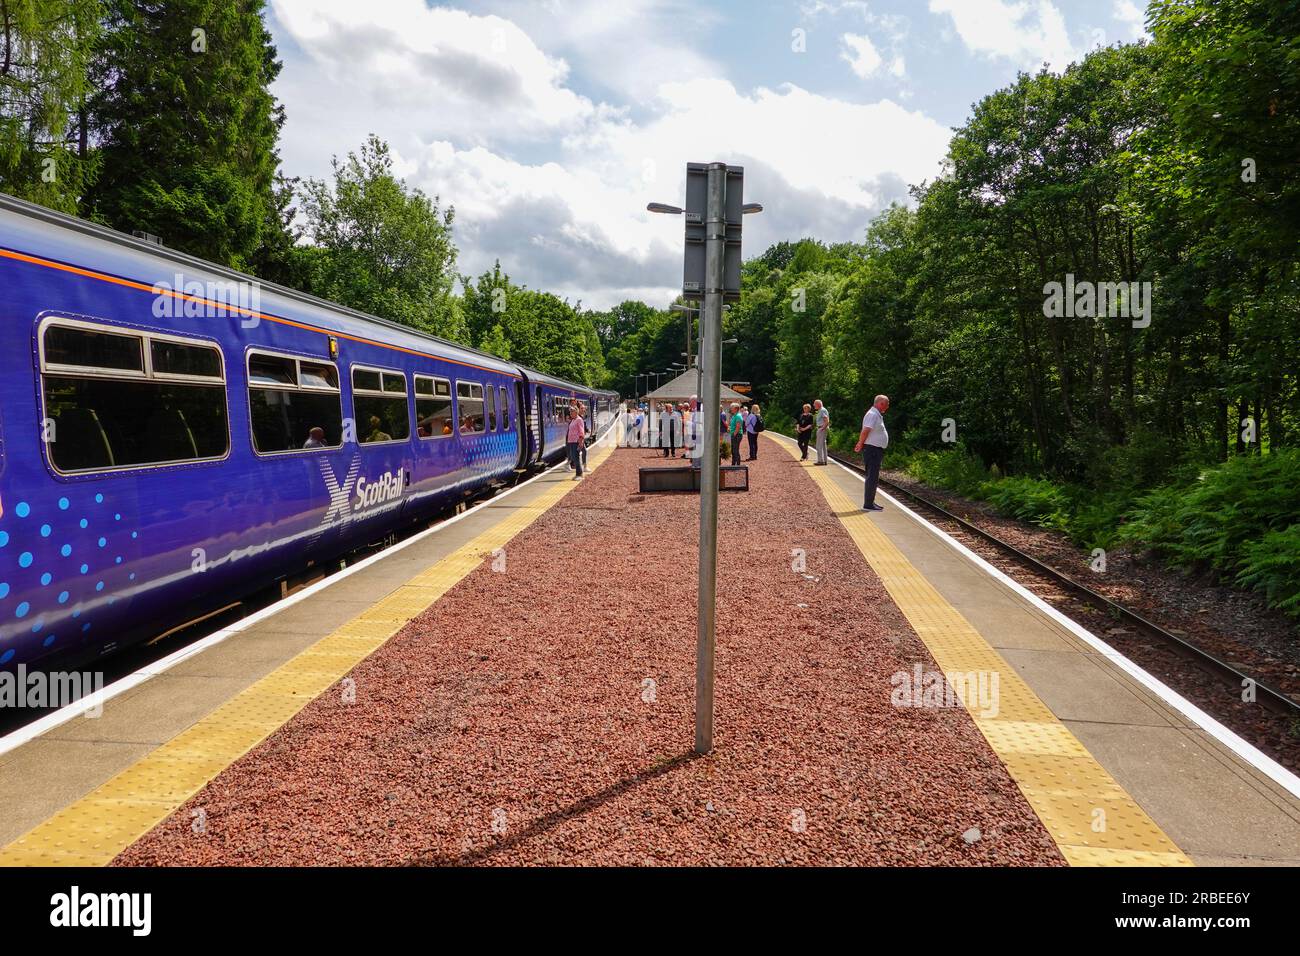 Le train ScotRail, voyageant de la gare de Glasgow Queen Street à Oban, s'est arrêté sur la voie ferrée, attendant le passage du train, juste au sud de Crianlarich, en Écosse. Banque D'Images